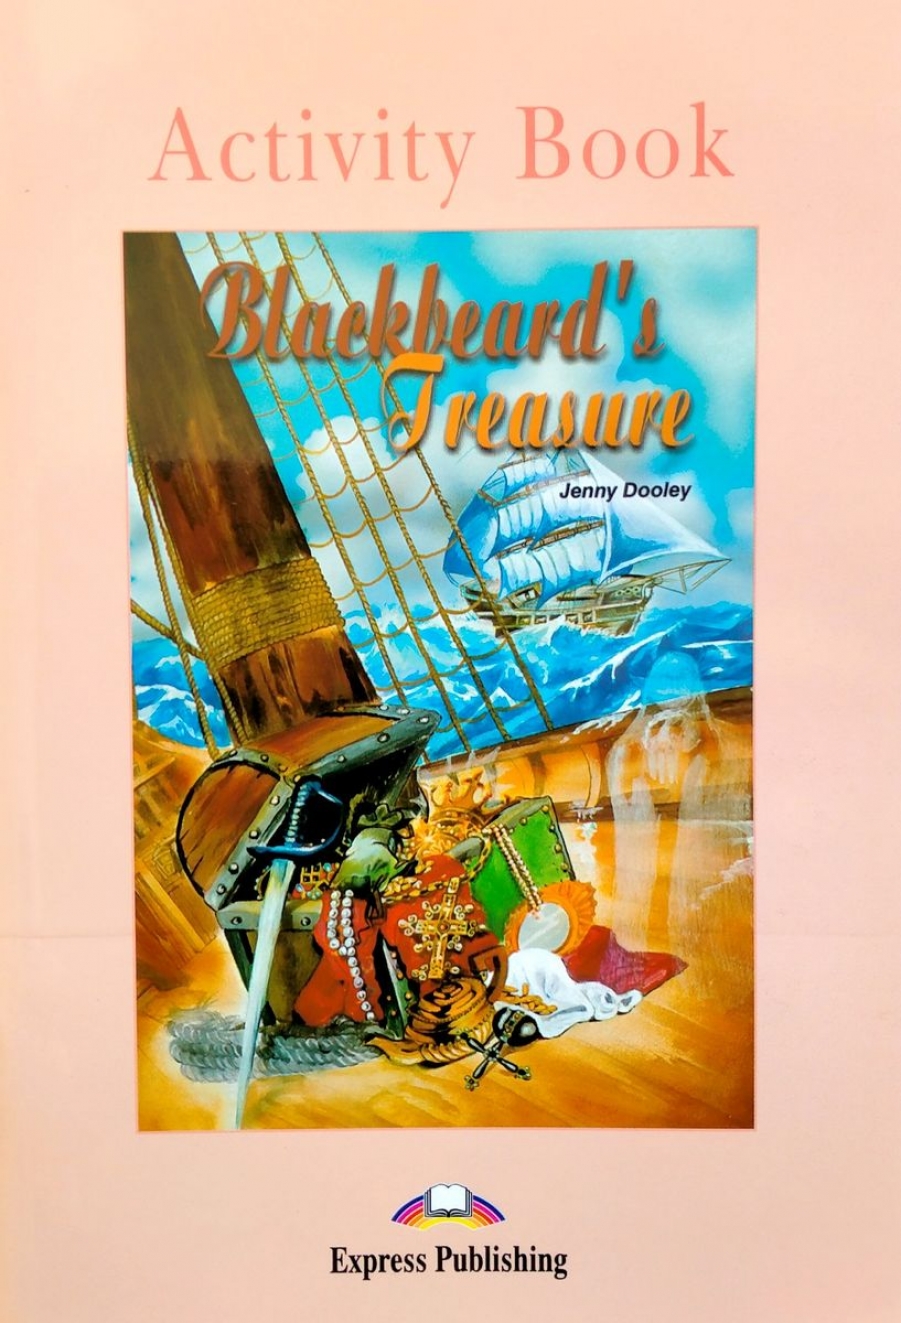 Jenny Dooley Graded Readers Level 1 Blackbeard's Treasure Activity Book 